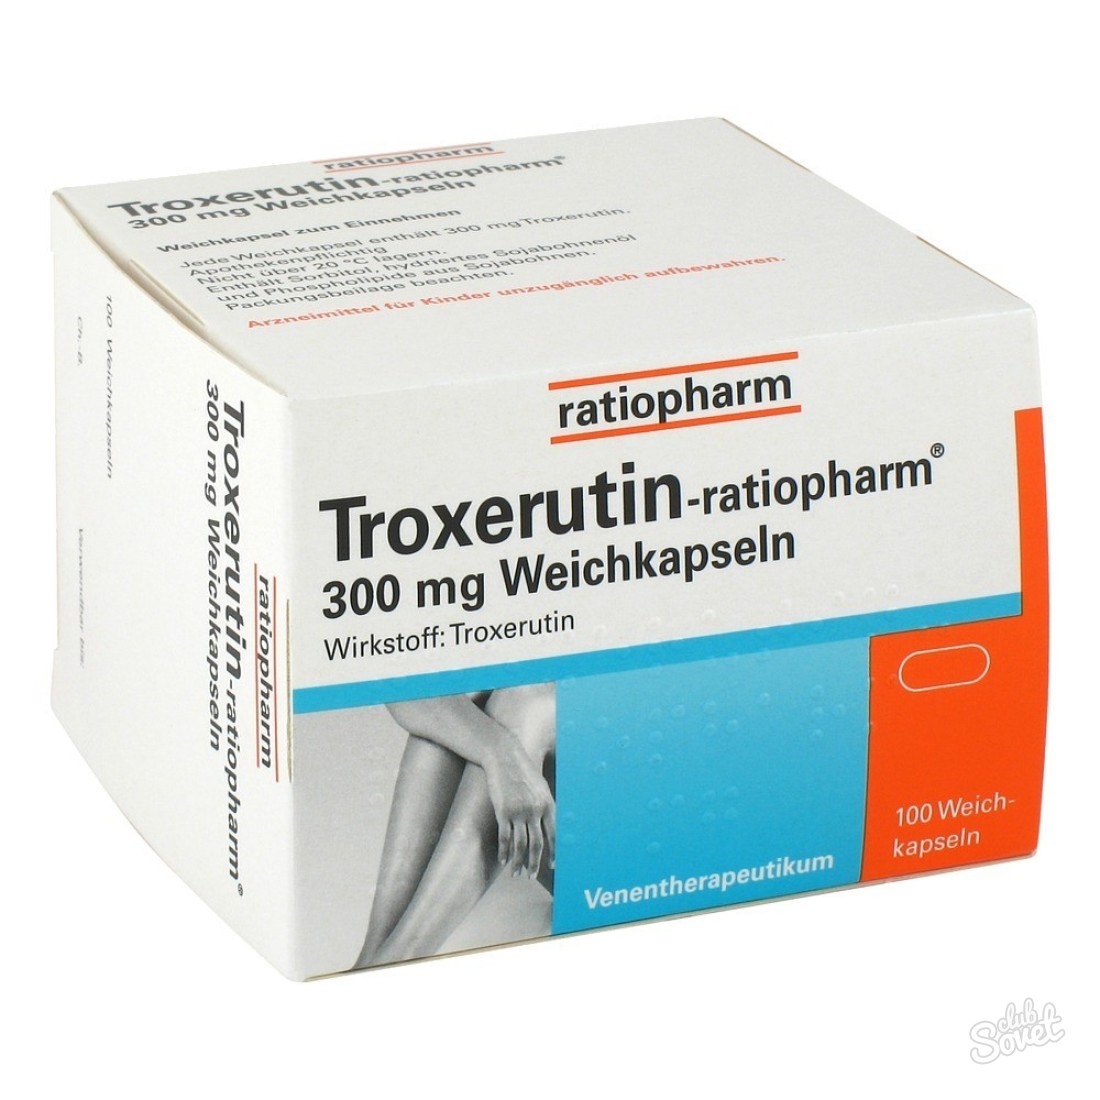 دستورالعمل برای استفاده از trocserutin